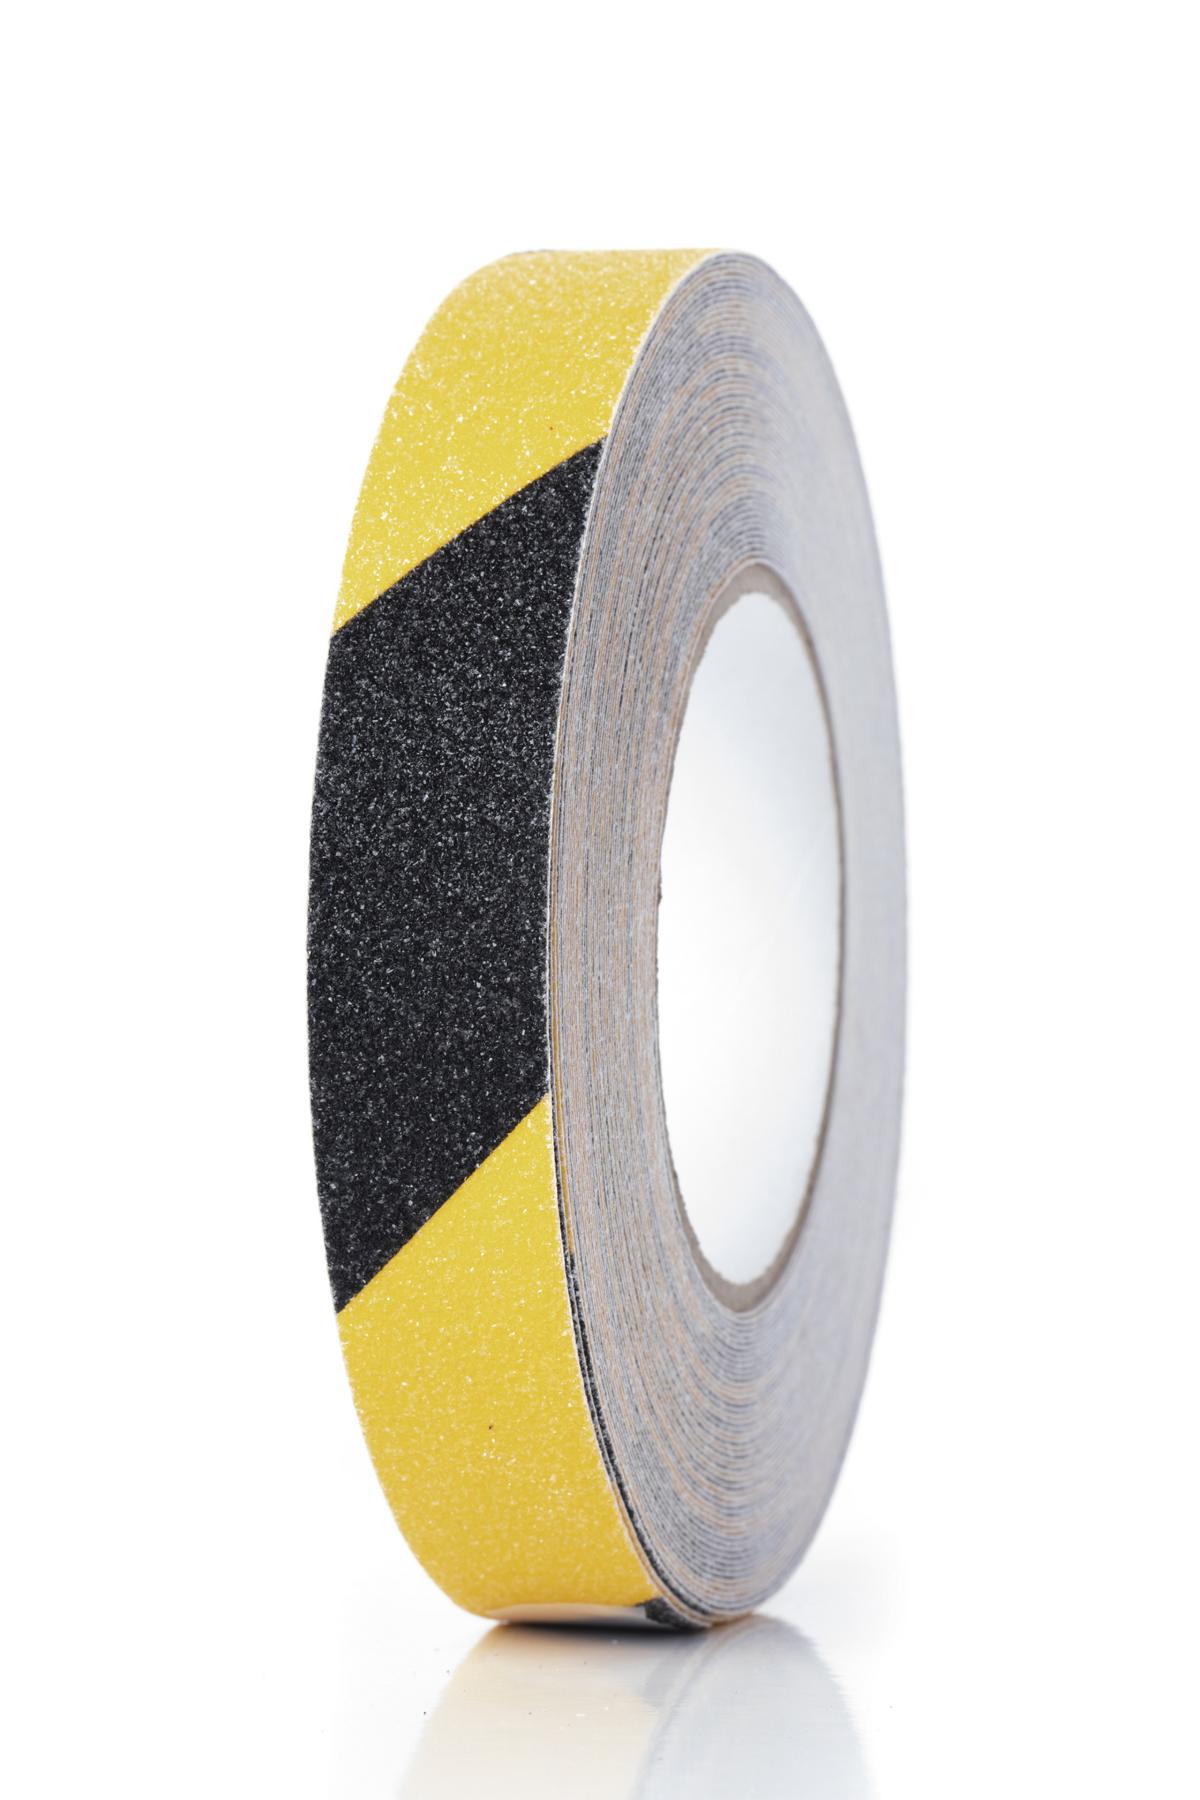 Antirutschbelag Traffic Safety Tape® - Breite 25 bzw. 50 mm, Länge 18 m, gelb/schwarz oder schwarz